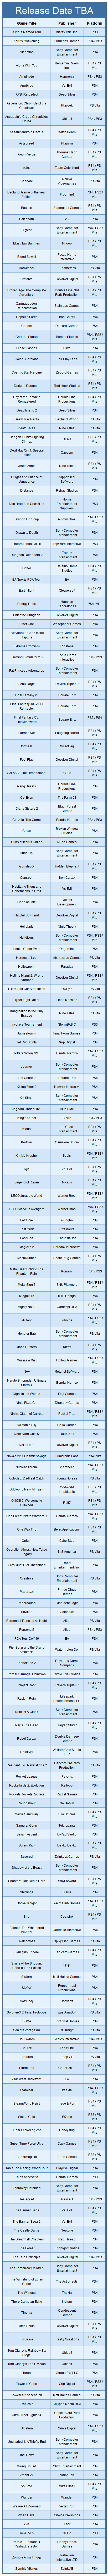 Juegos para PS4, PS3, PS Vita 2015